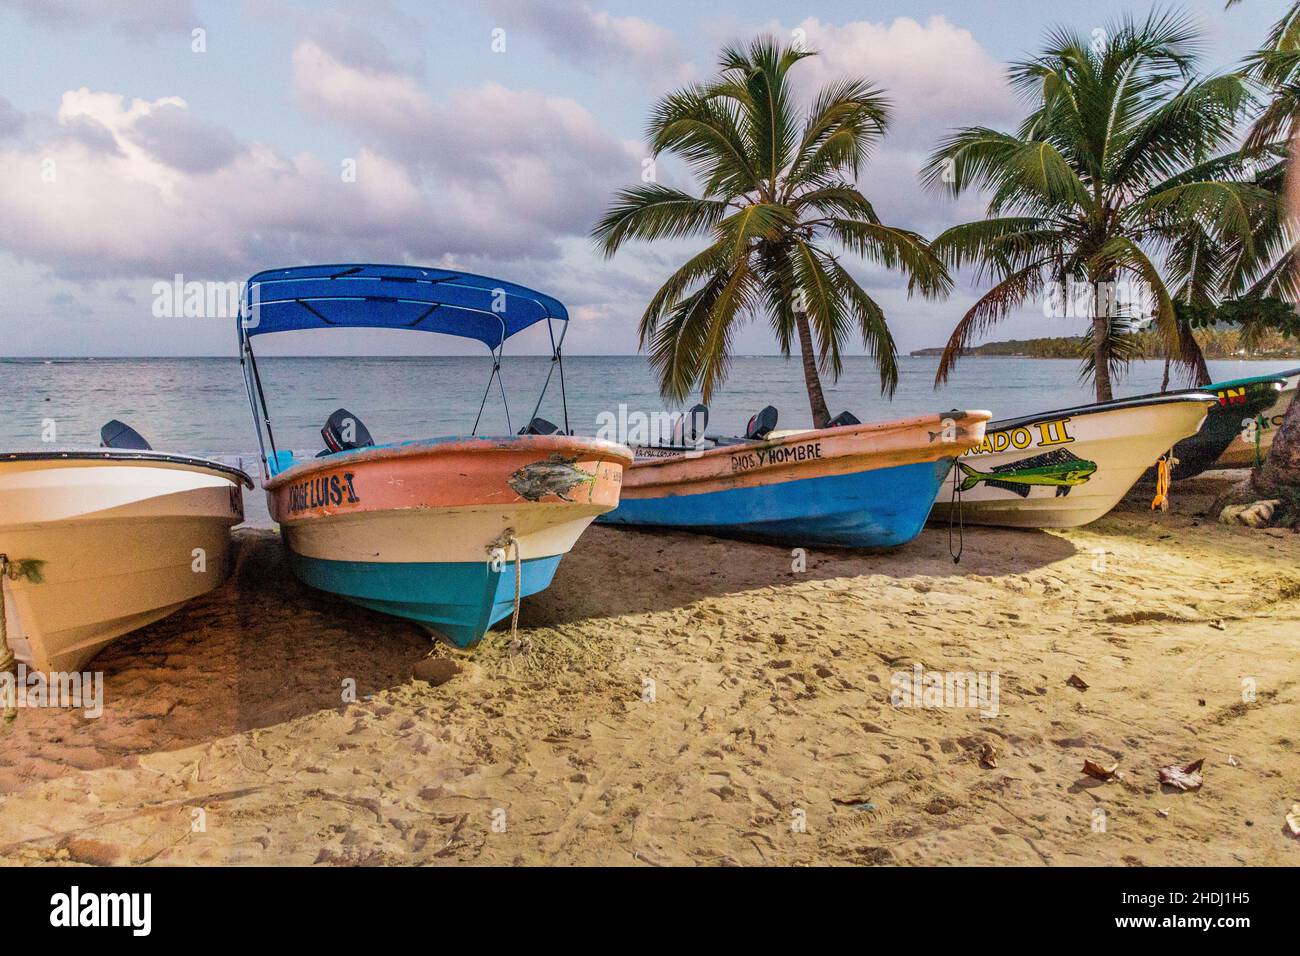 LAS GALERAS, DOMINICAN REPUBLIC - DECEMBER 5, 2018: Boats on a beach in Las Galeras, Dominican Republic Stock Photo